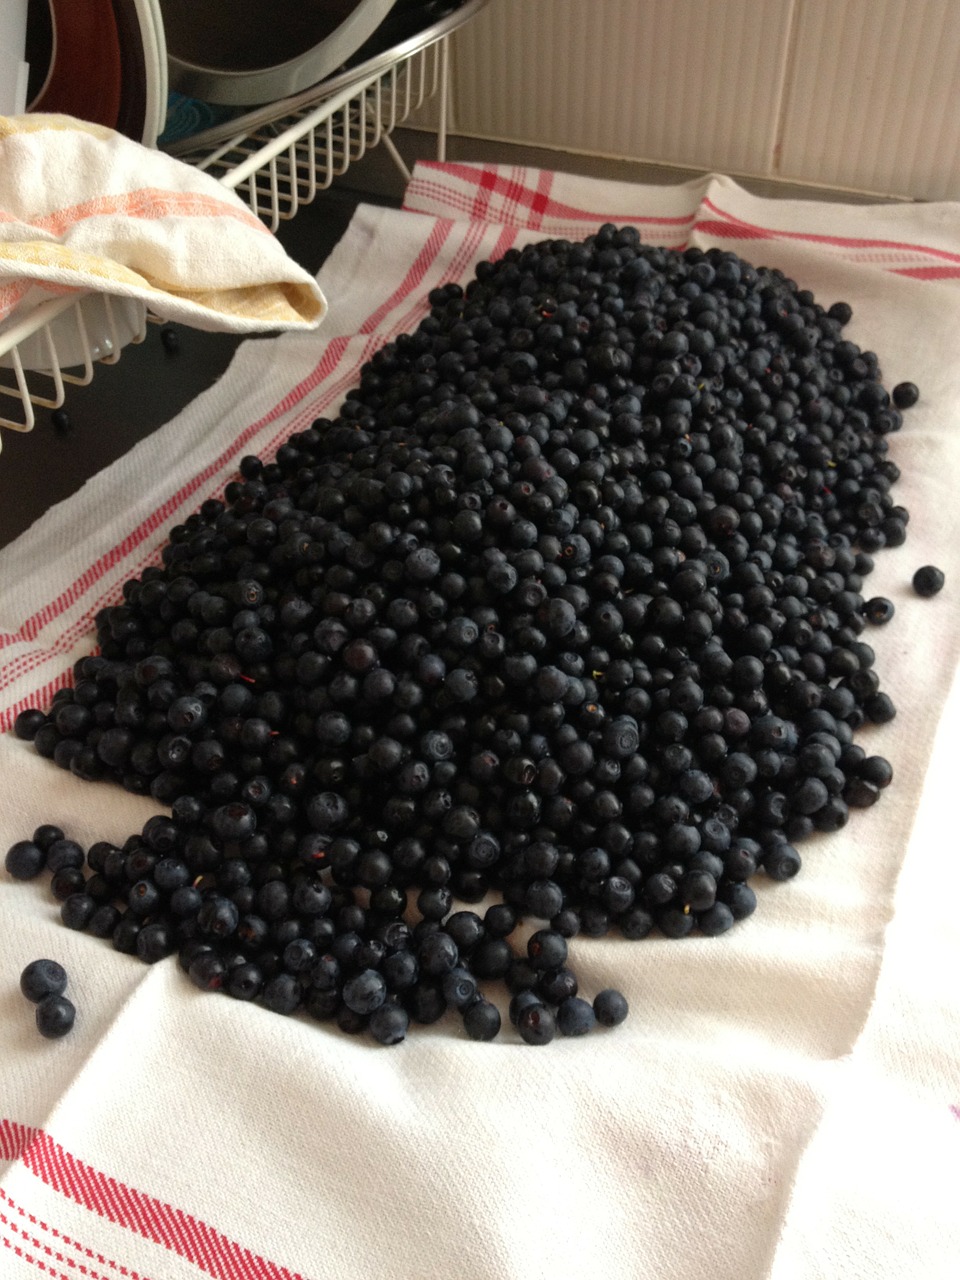 blueberries berries food free photo